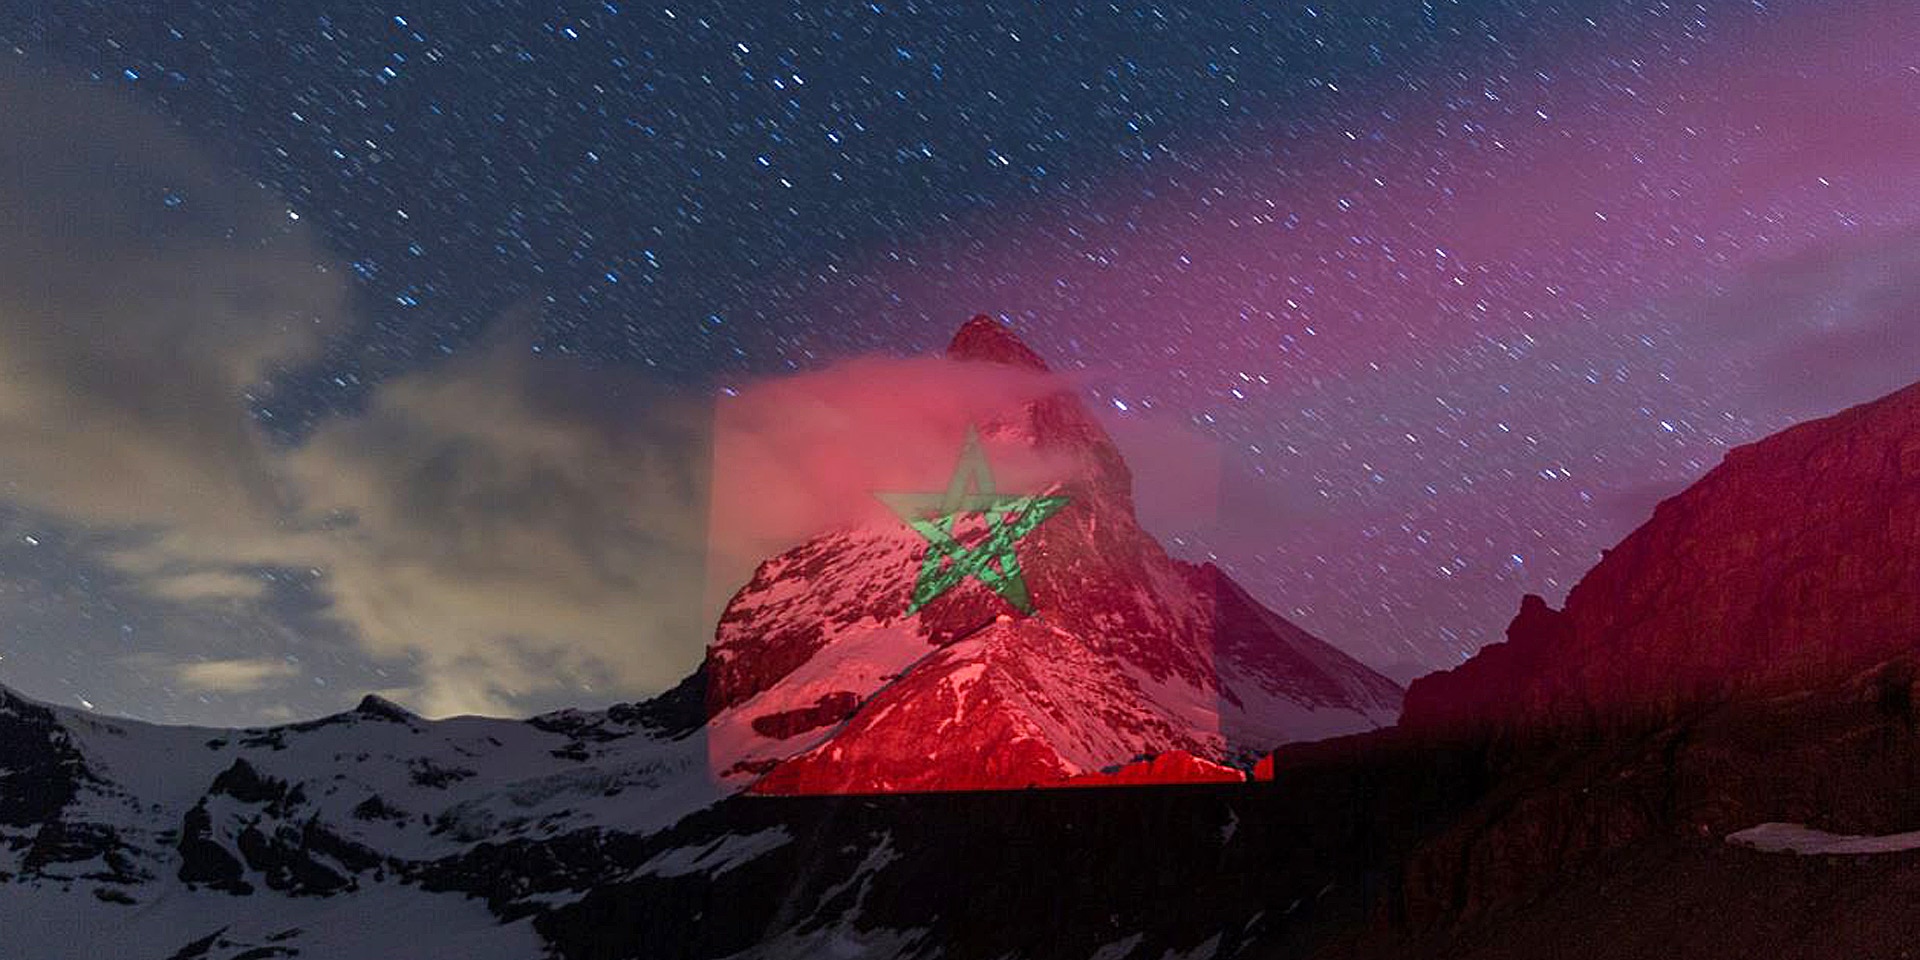 Die rot-grüne Flagge Marokkos wird auf das Matterhorn, das Wahrzeichen der Schweiz, projiziert.